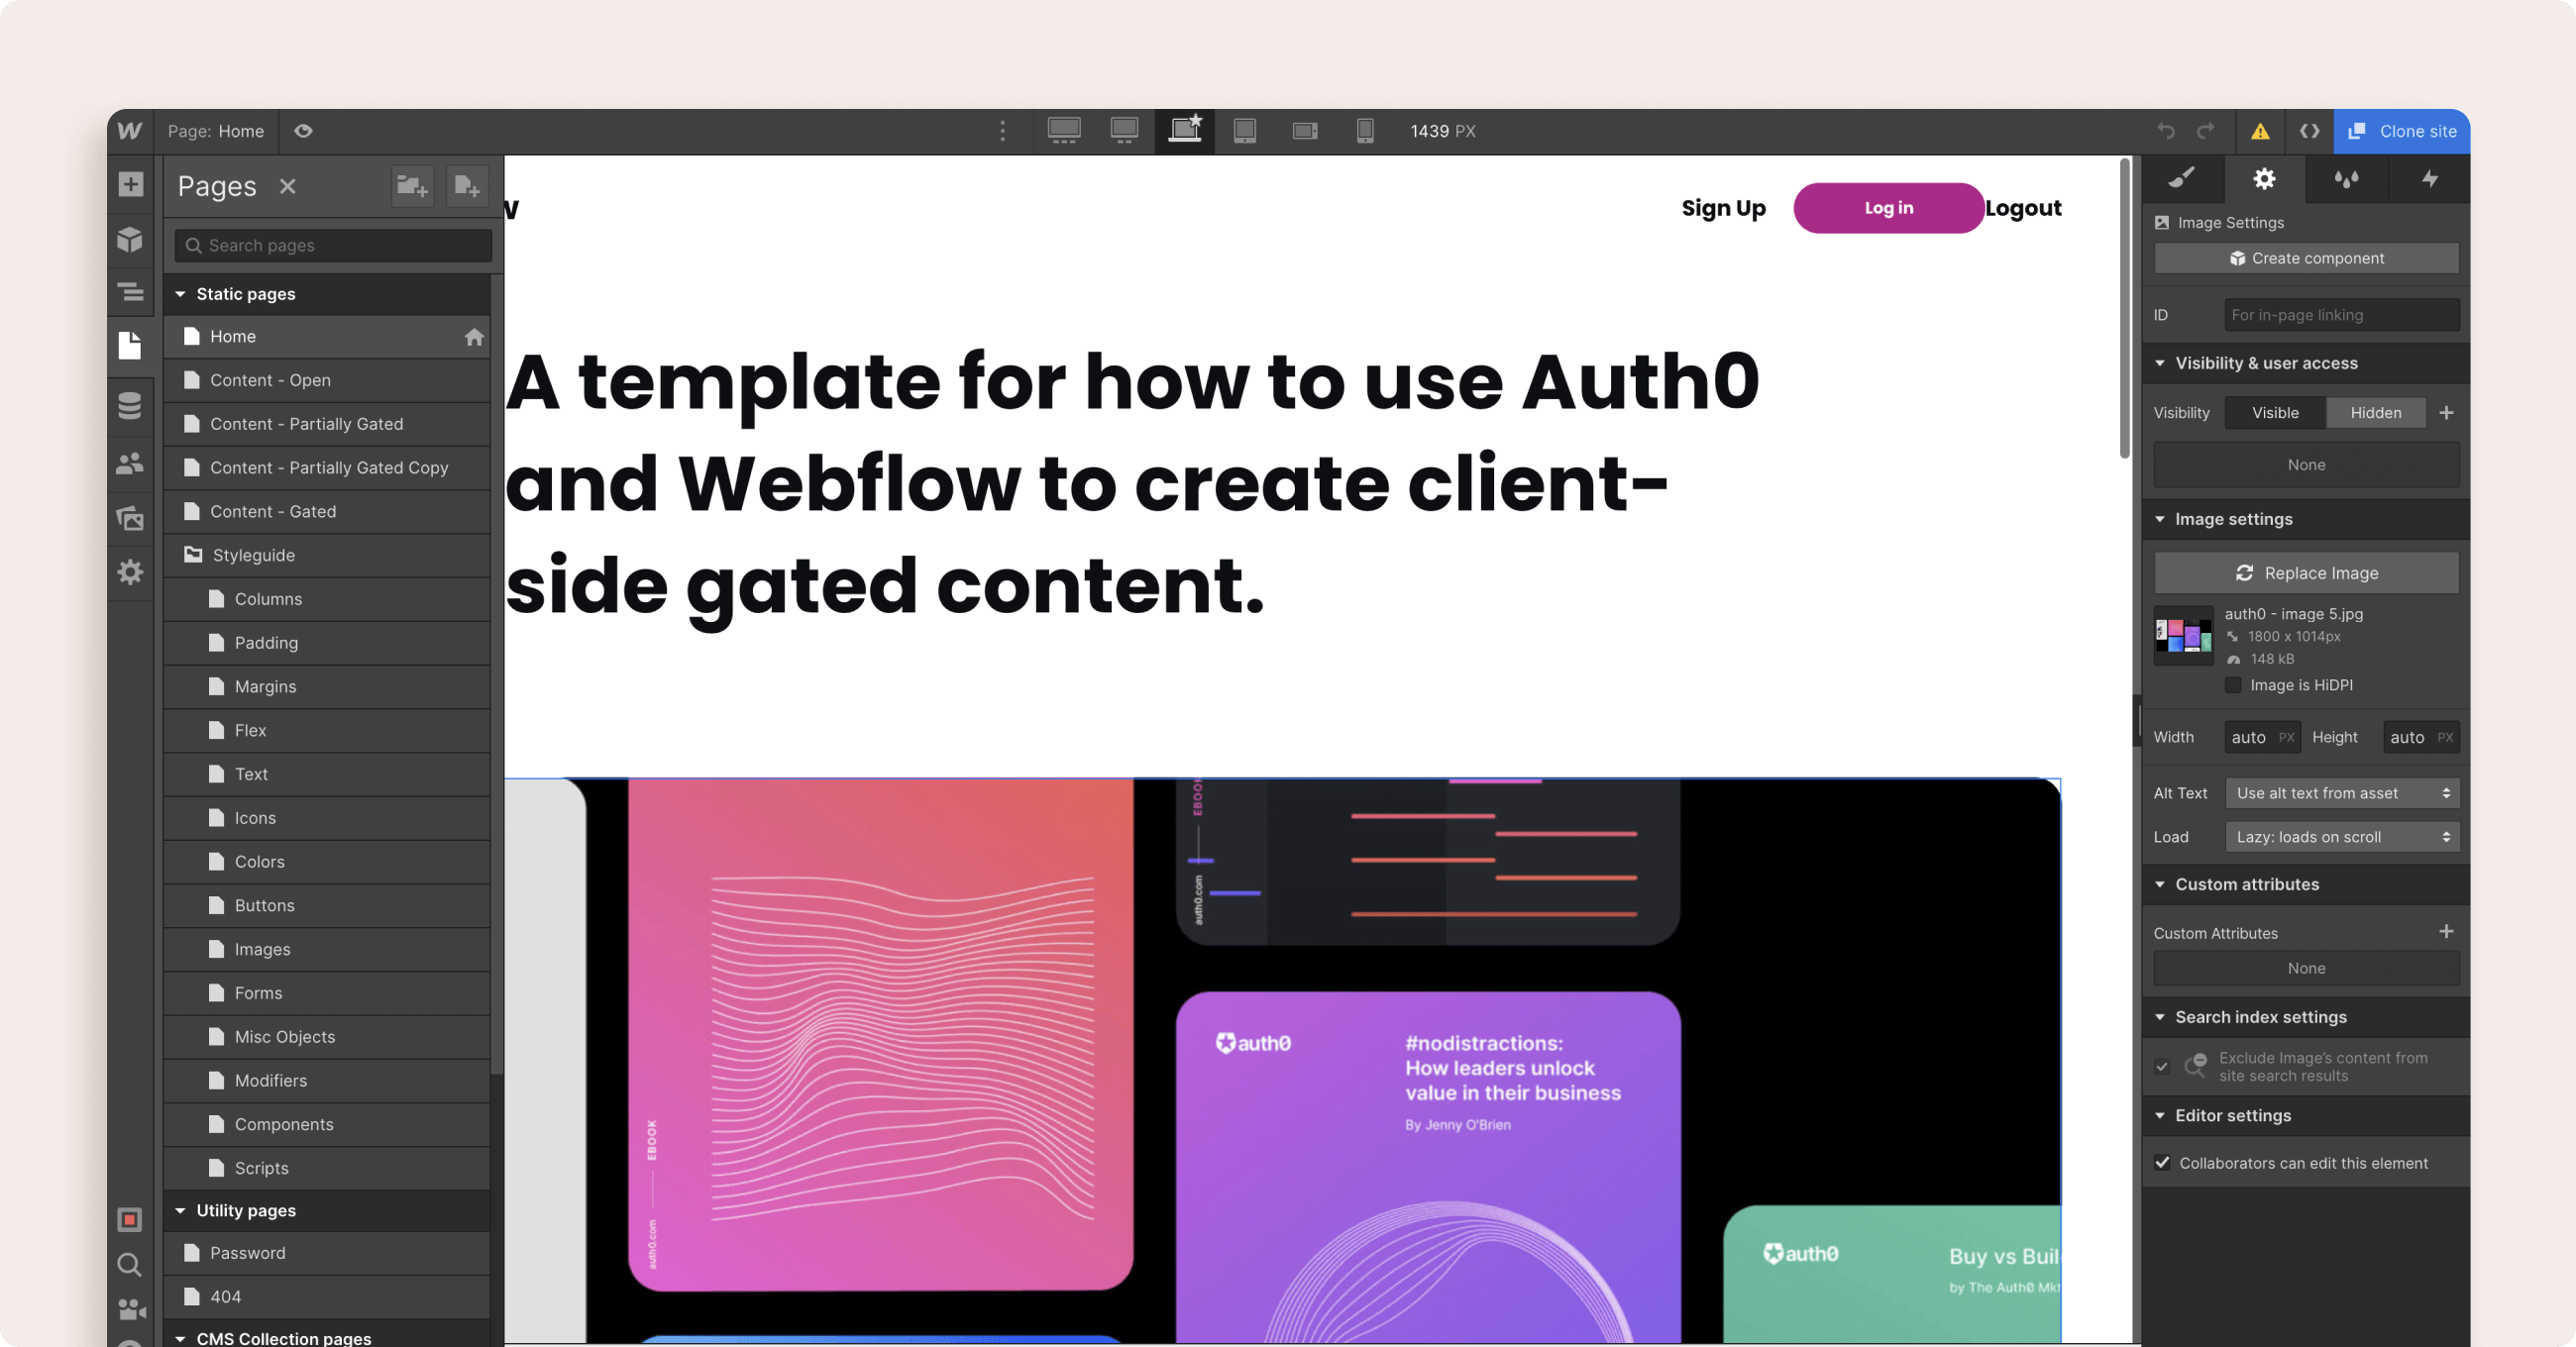 Webflow Development